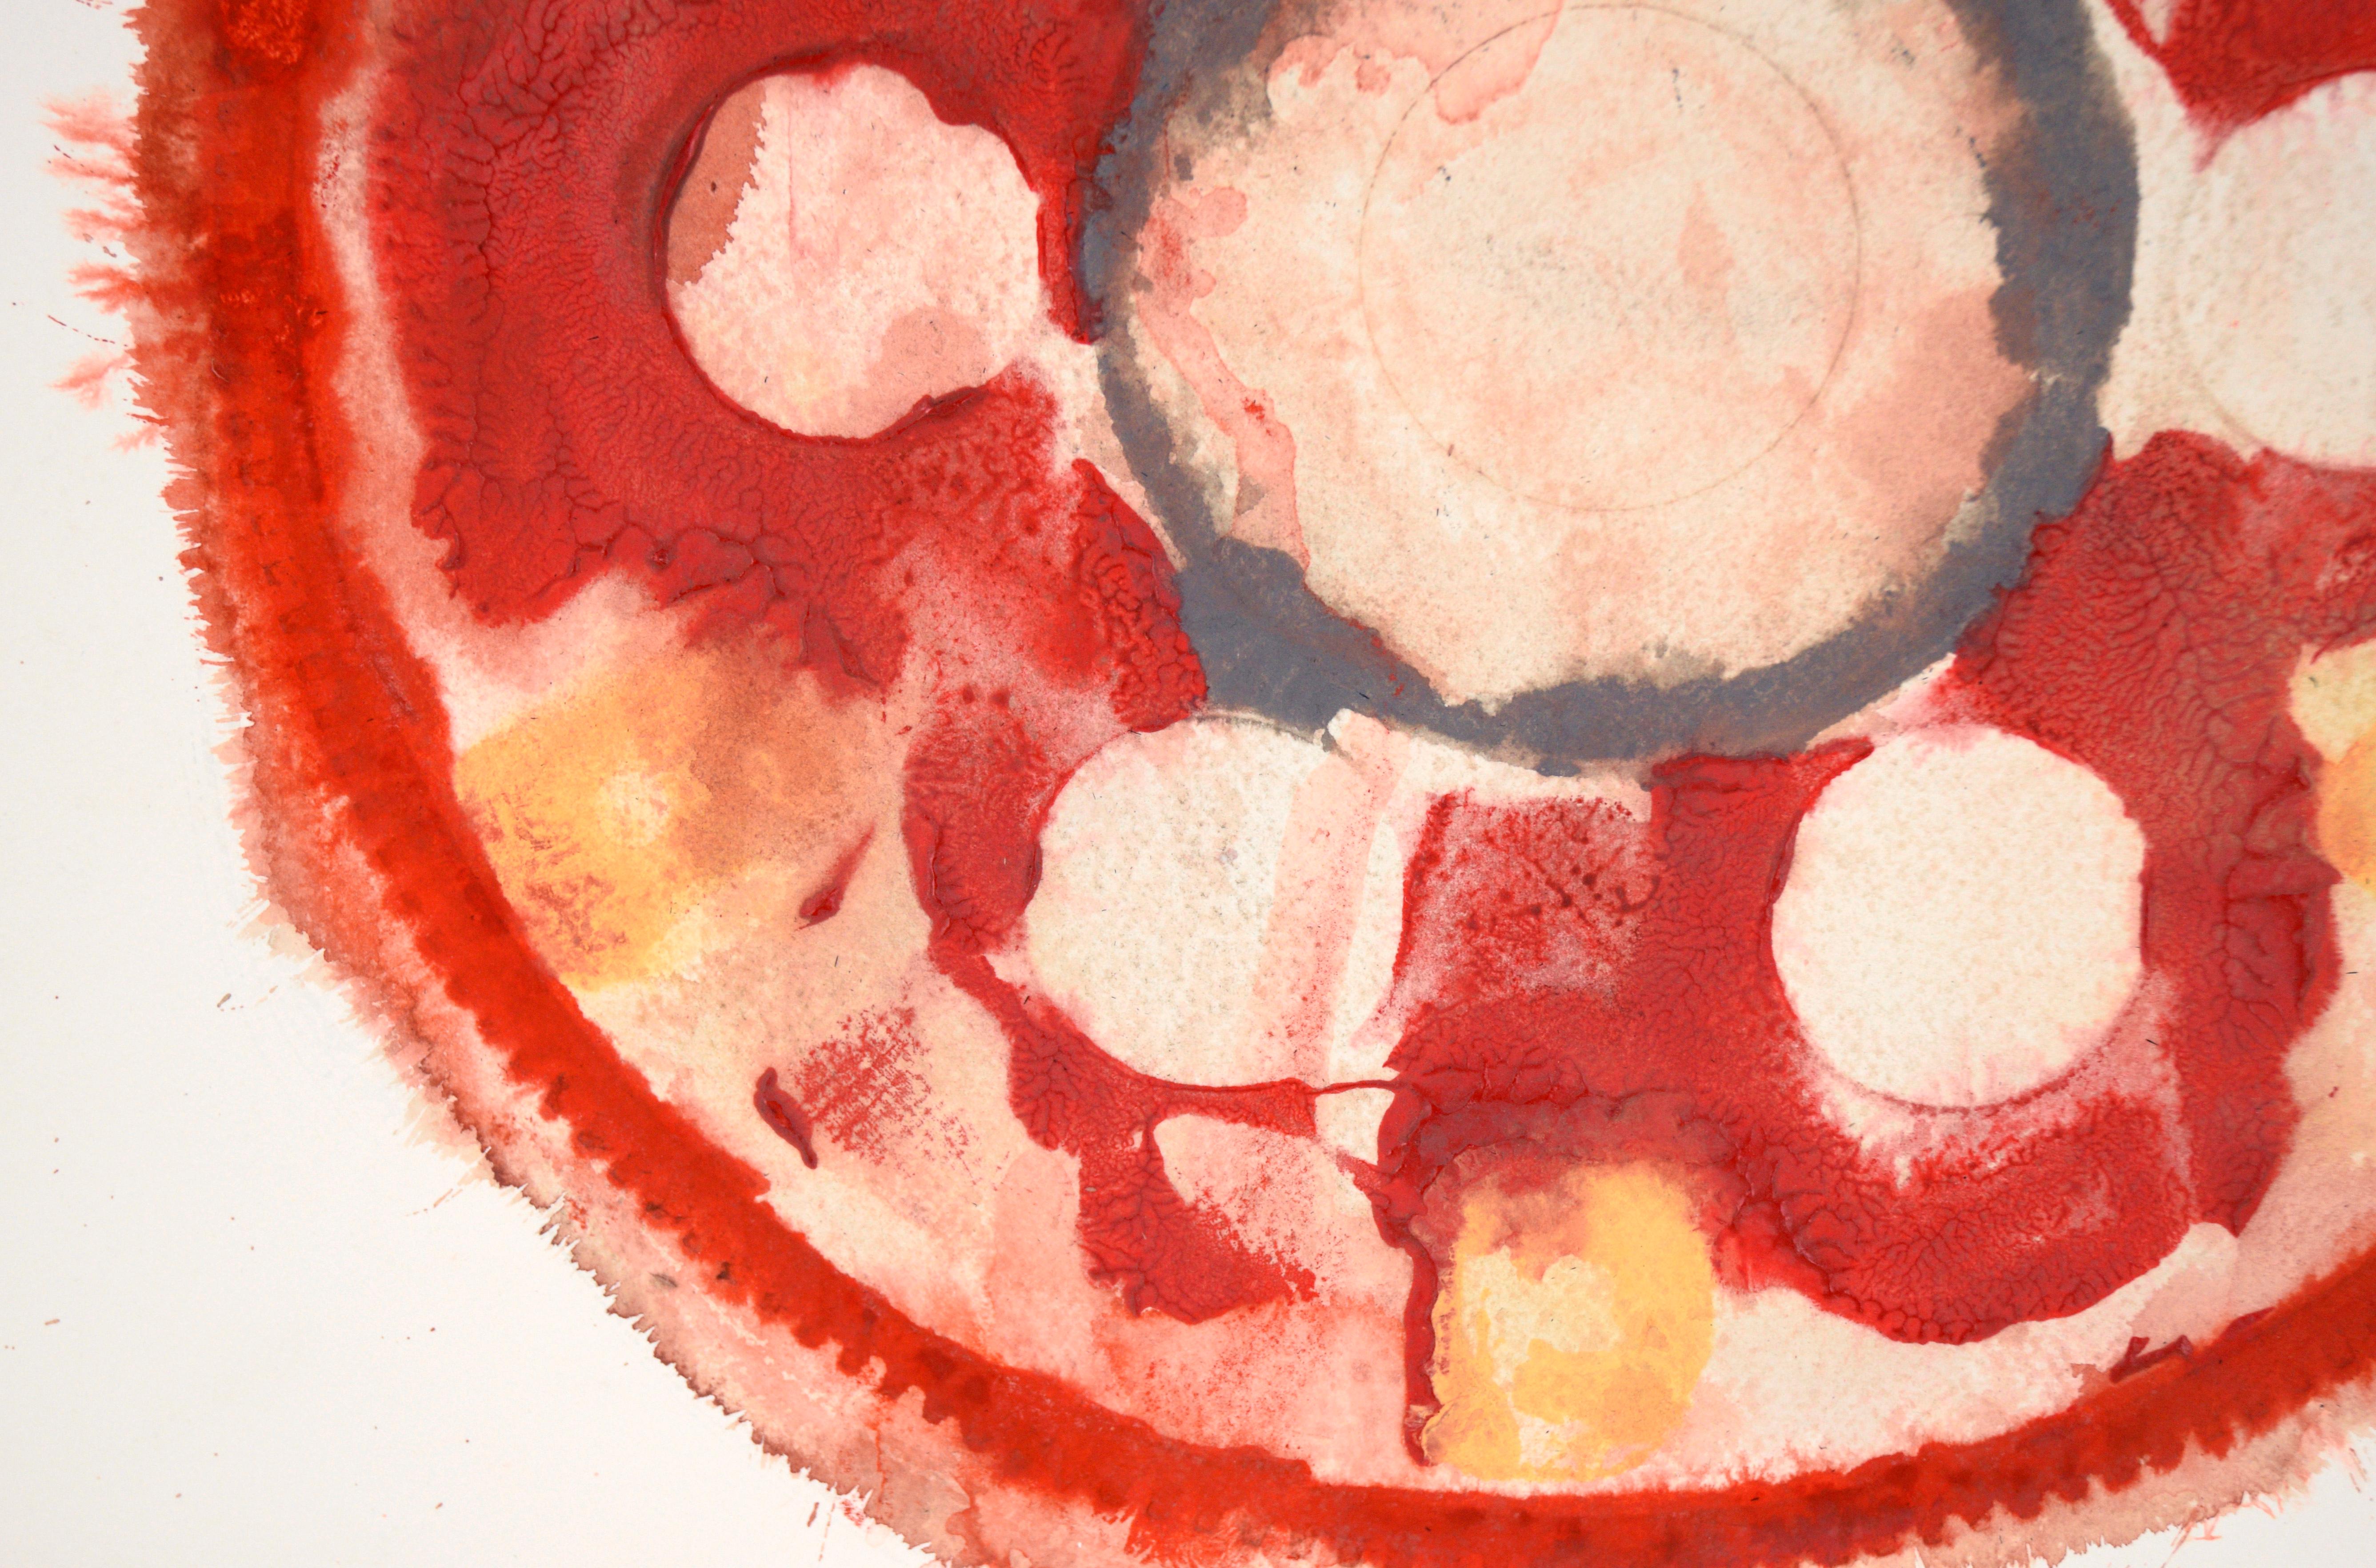 Get in Gear - Composition expressionniste abstraite géométrique en acrylique sur papier

Une peinture abstraite audacieuse en rouge de l'artiste californien Ricardo de Silva (Américain/Brésil, C.C.). Un grand engrenage (peut-être un plateau flexible